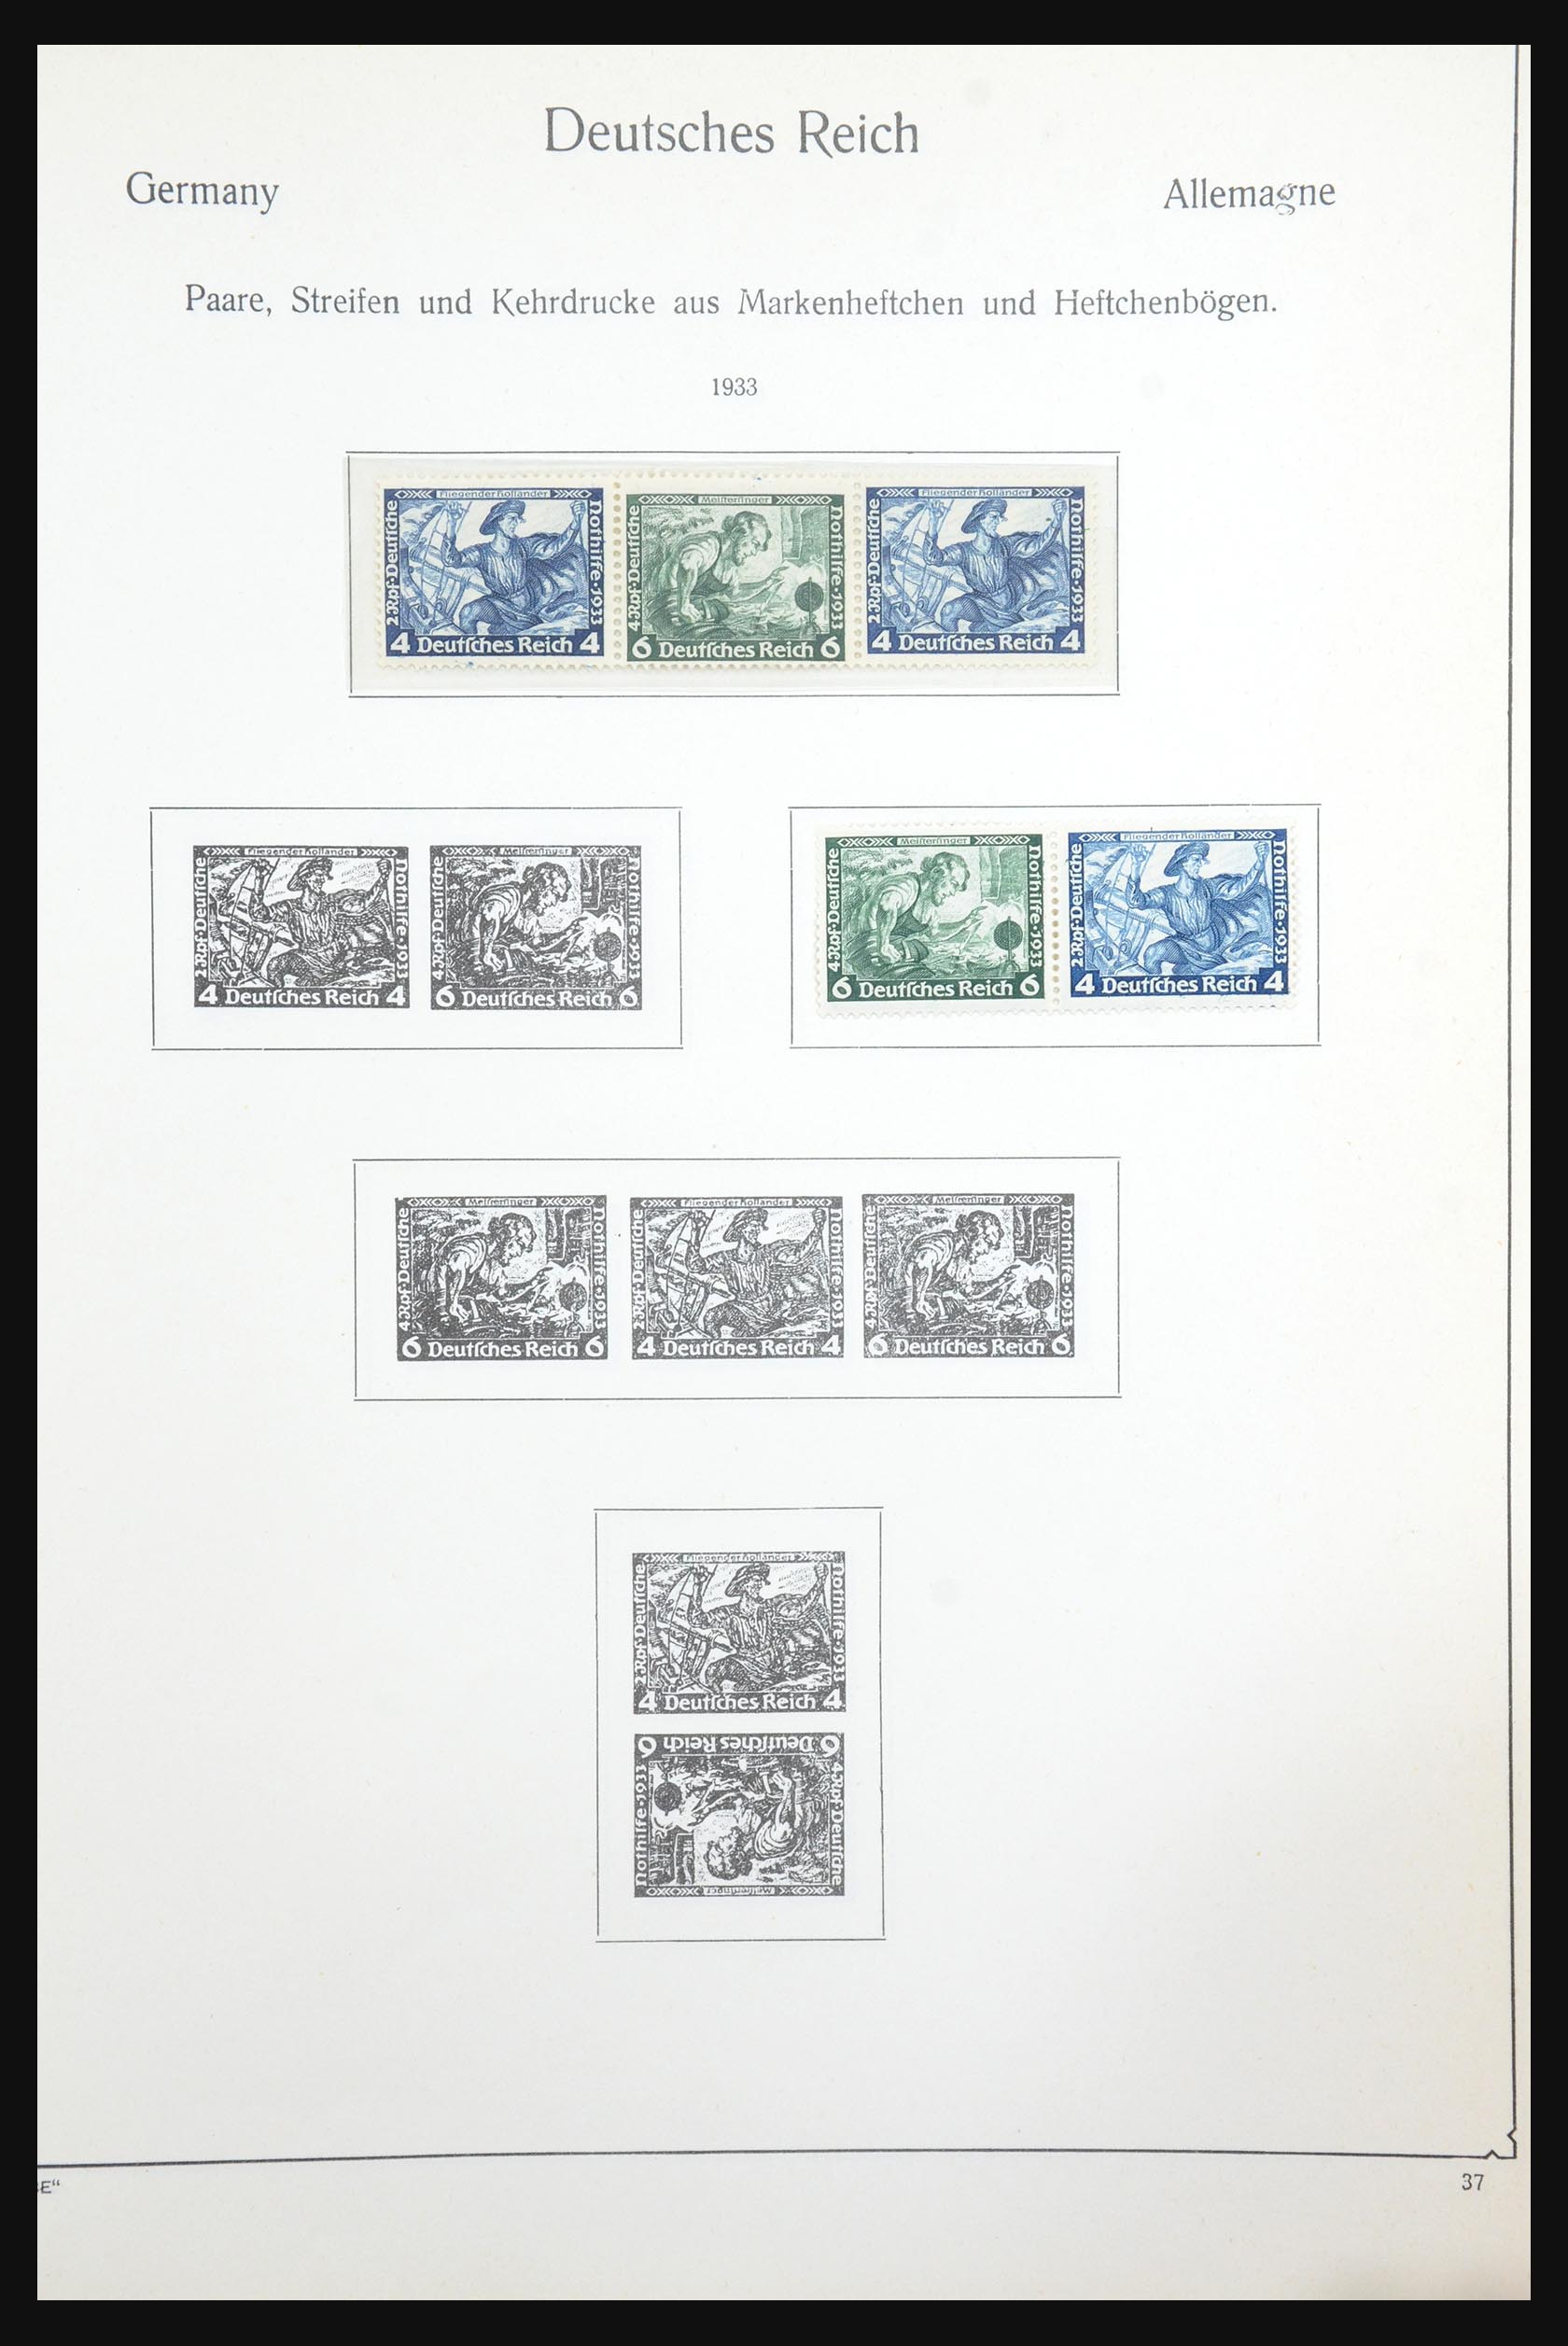 31566 018 - 31566 Duitsland combinaties 1909-1960.